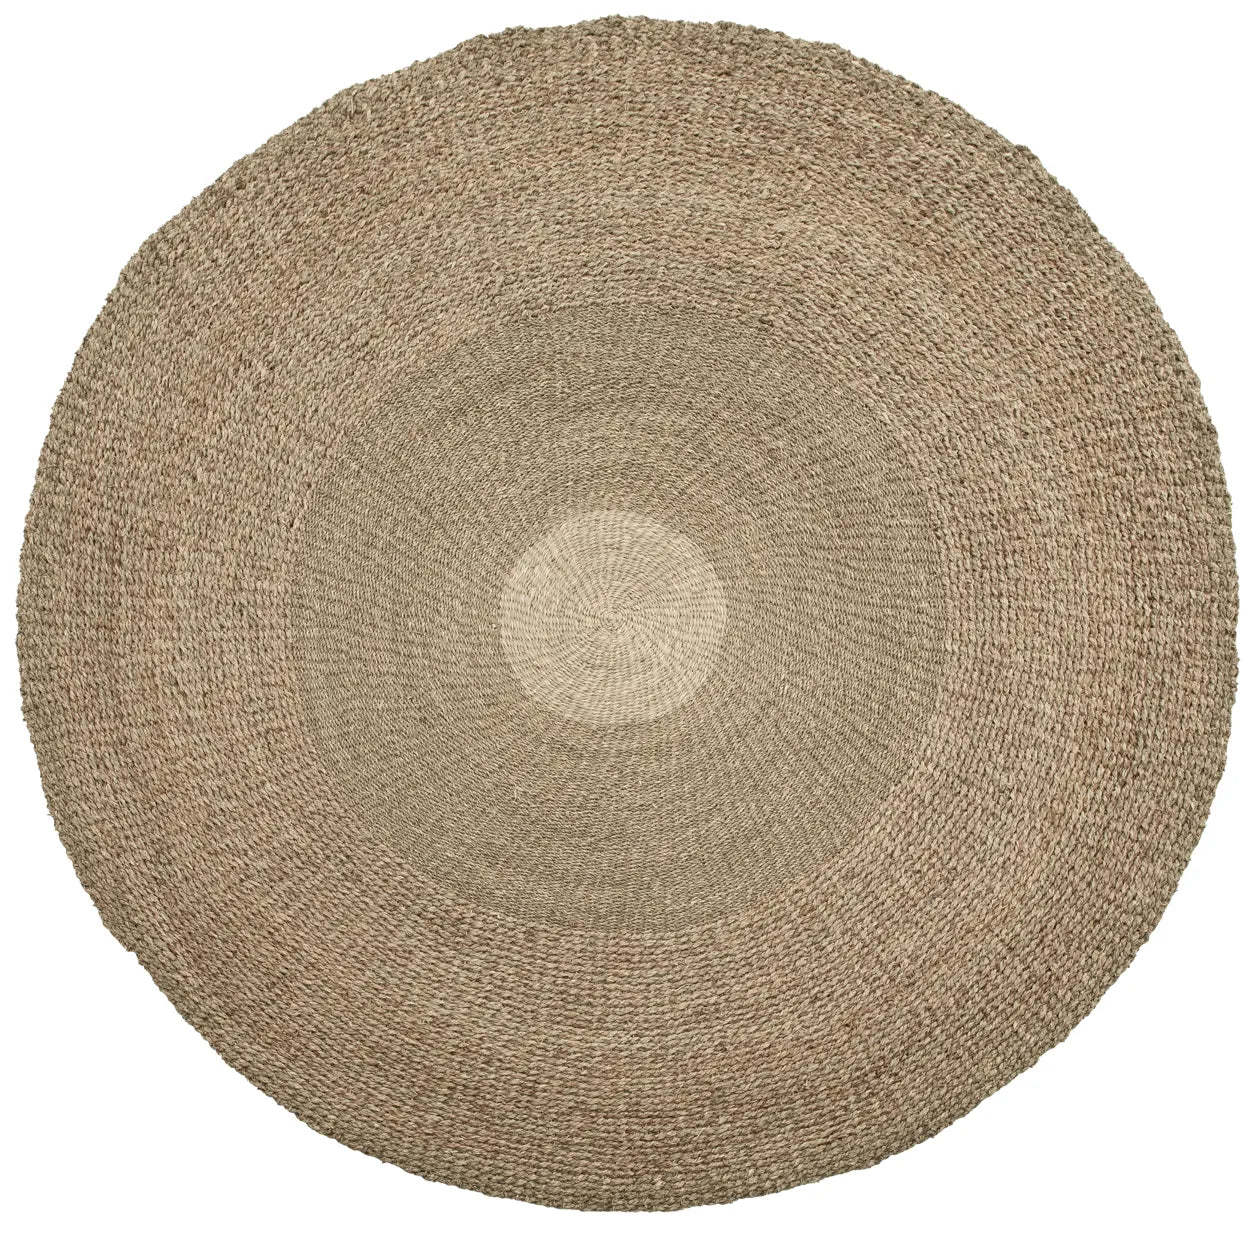 Aguilas River Carpet - Medium Round Centerpiece